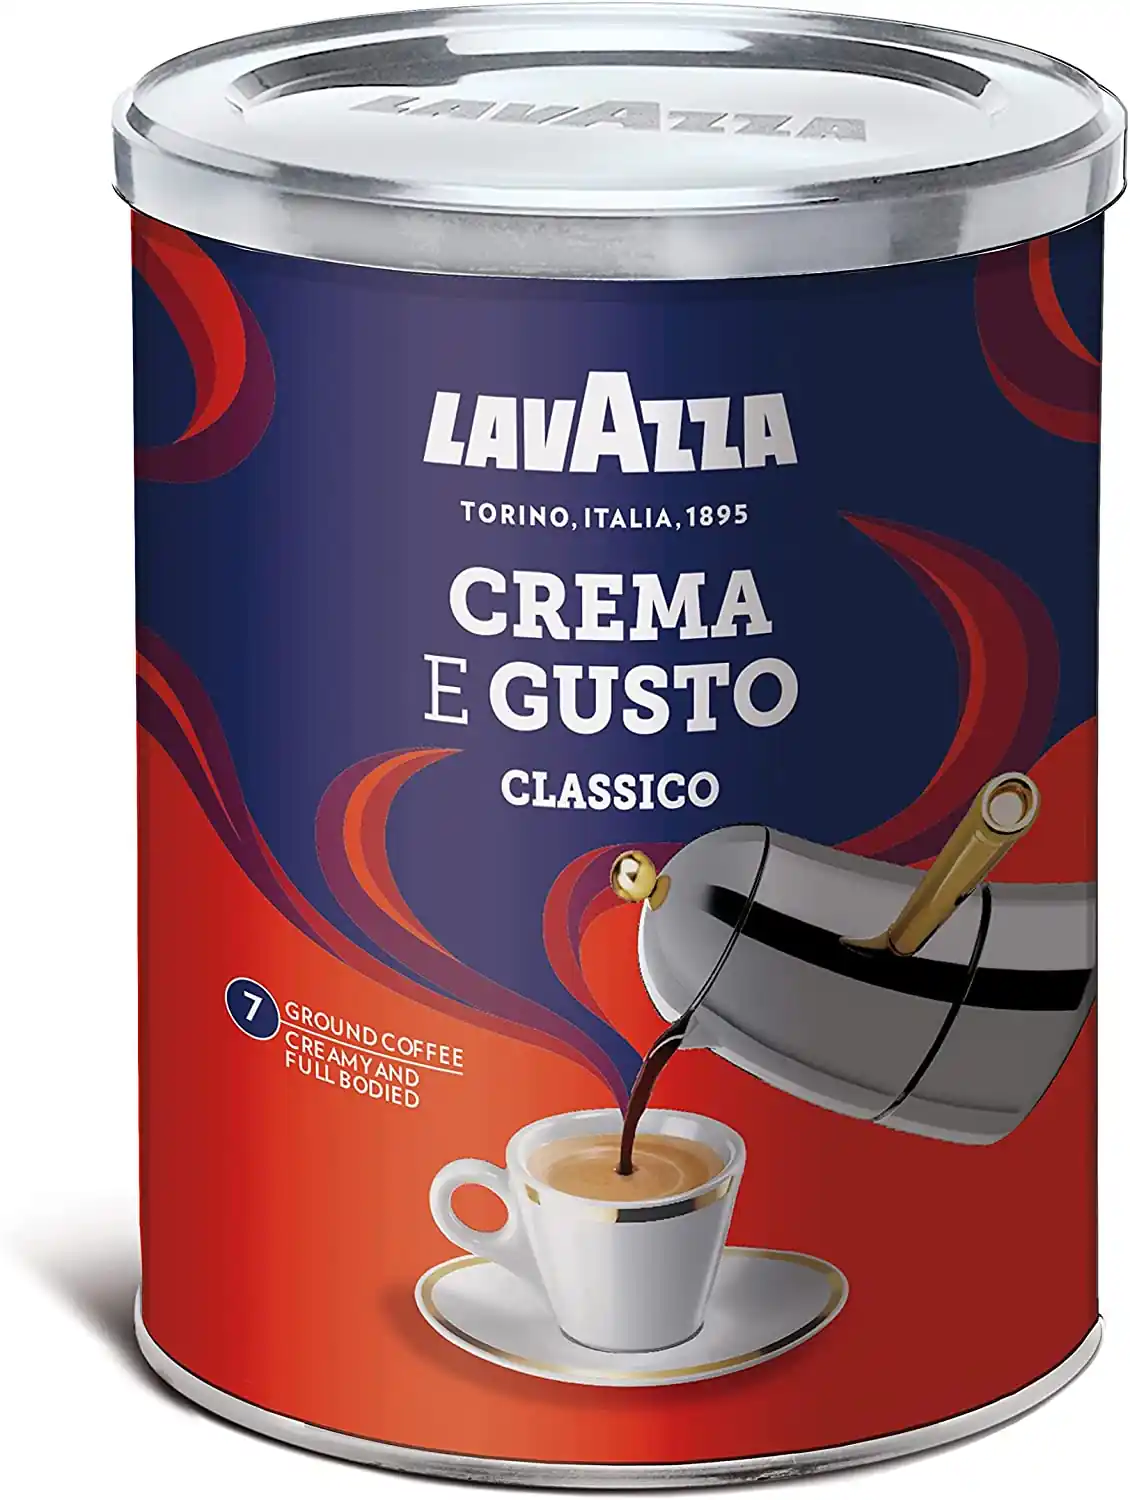 Lavazza Creama E Gusto Classico Coffee 250g_Can